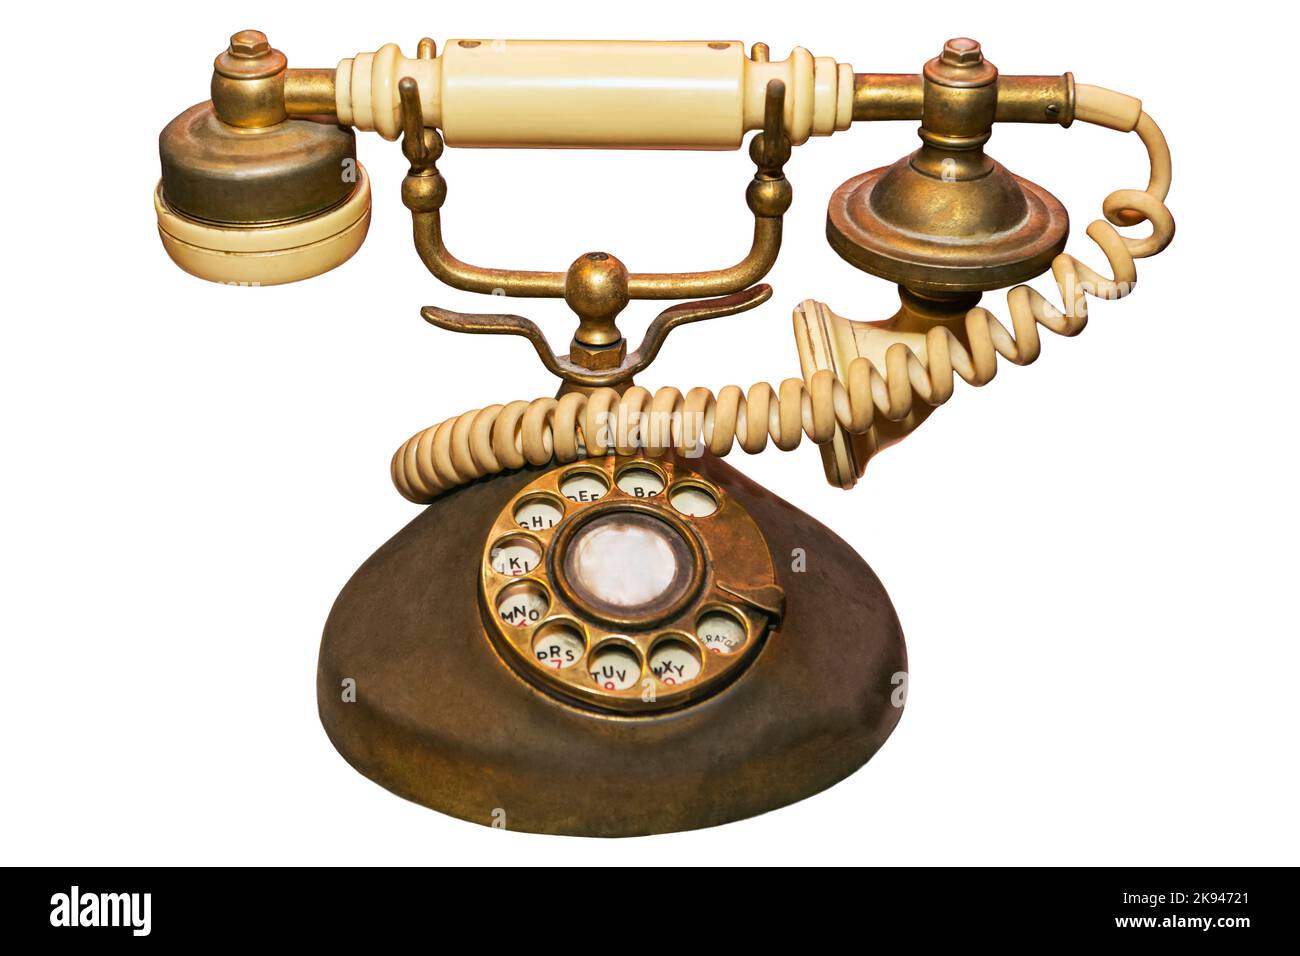 Un vieux et utilisé d'ivoire vintage et de couleur dorée téléphone à la maison, un objet à collectionner pour se souvenir de la communication de vieux temps Banque D'Images